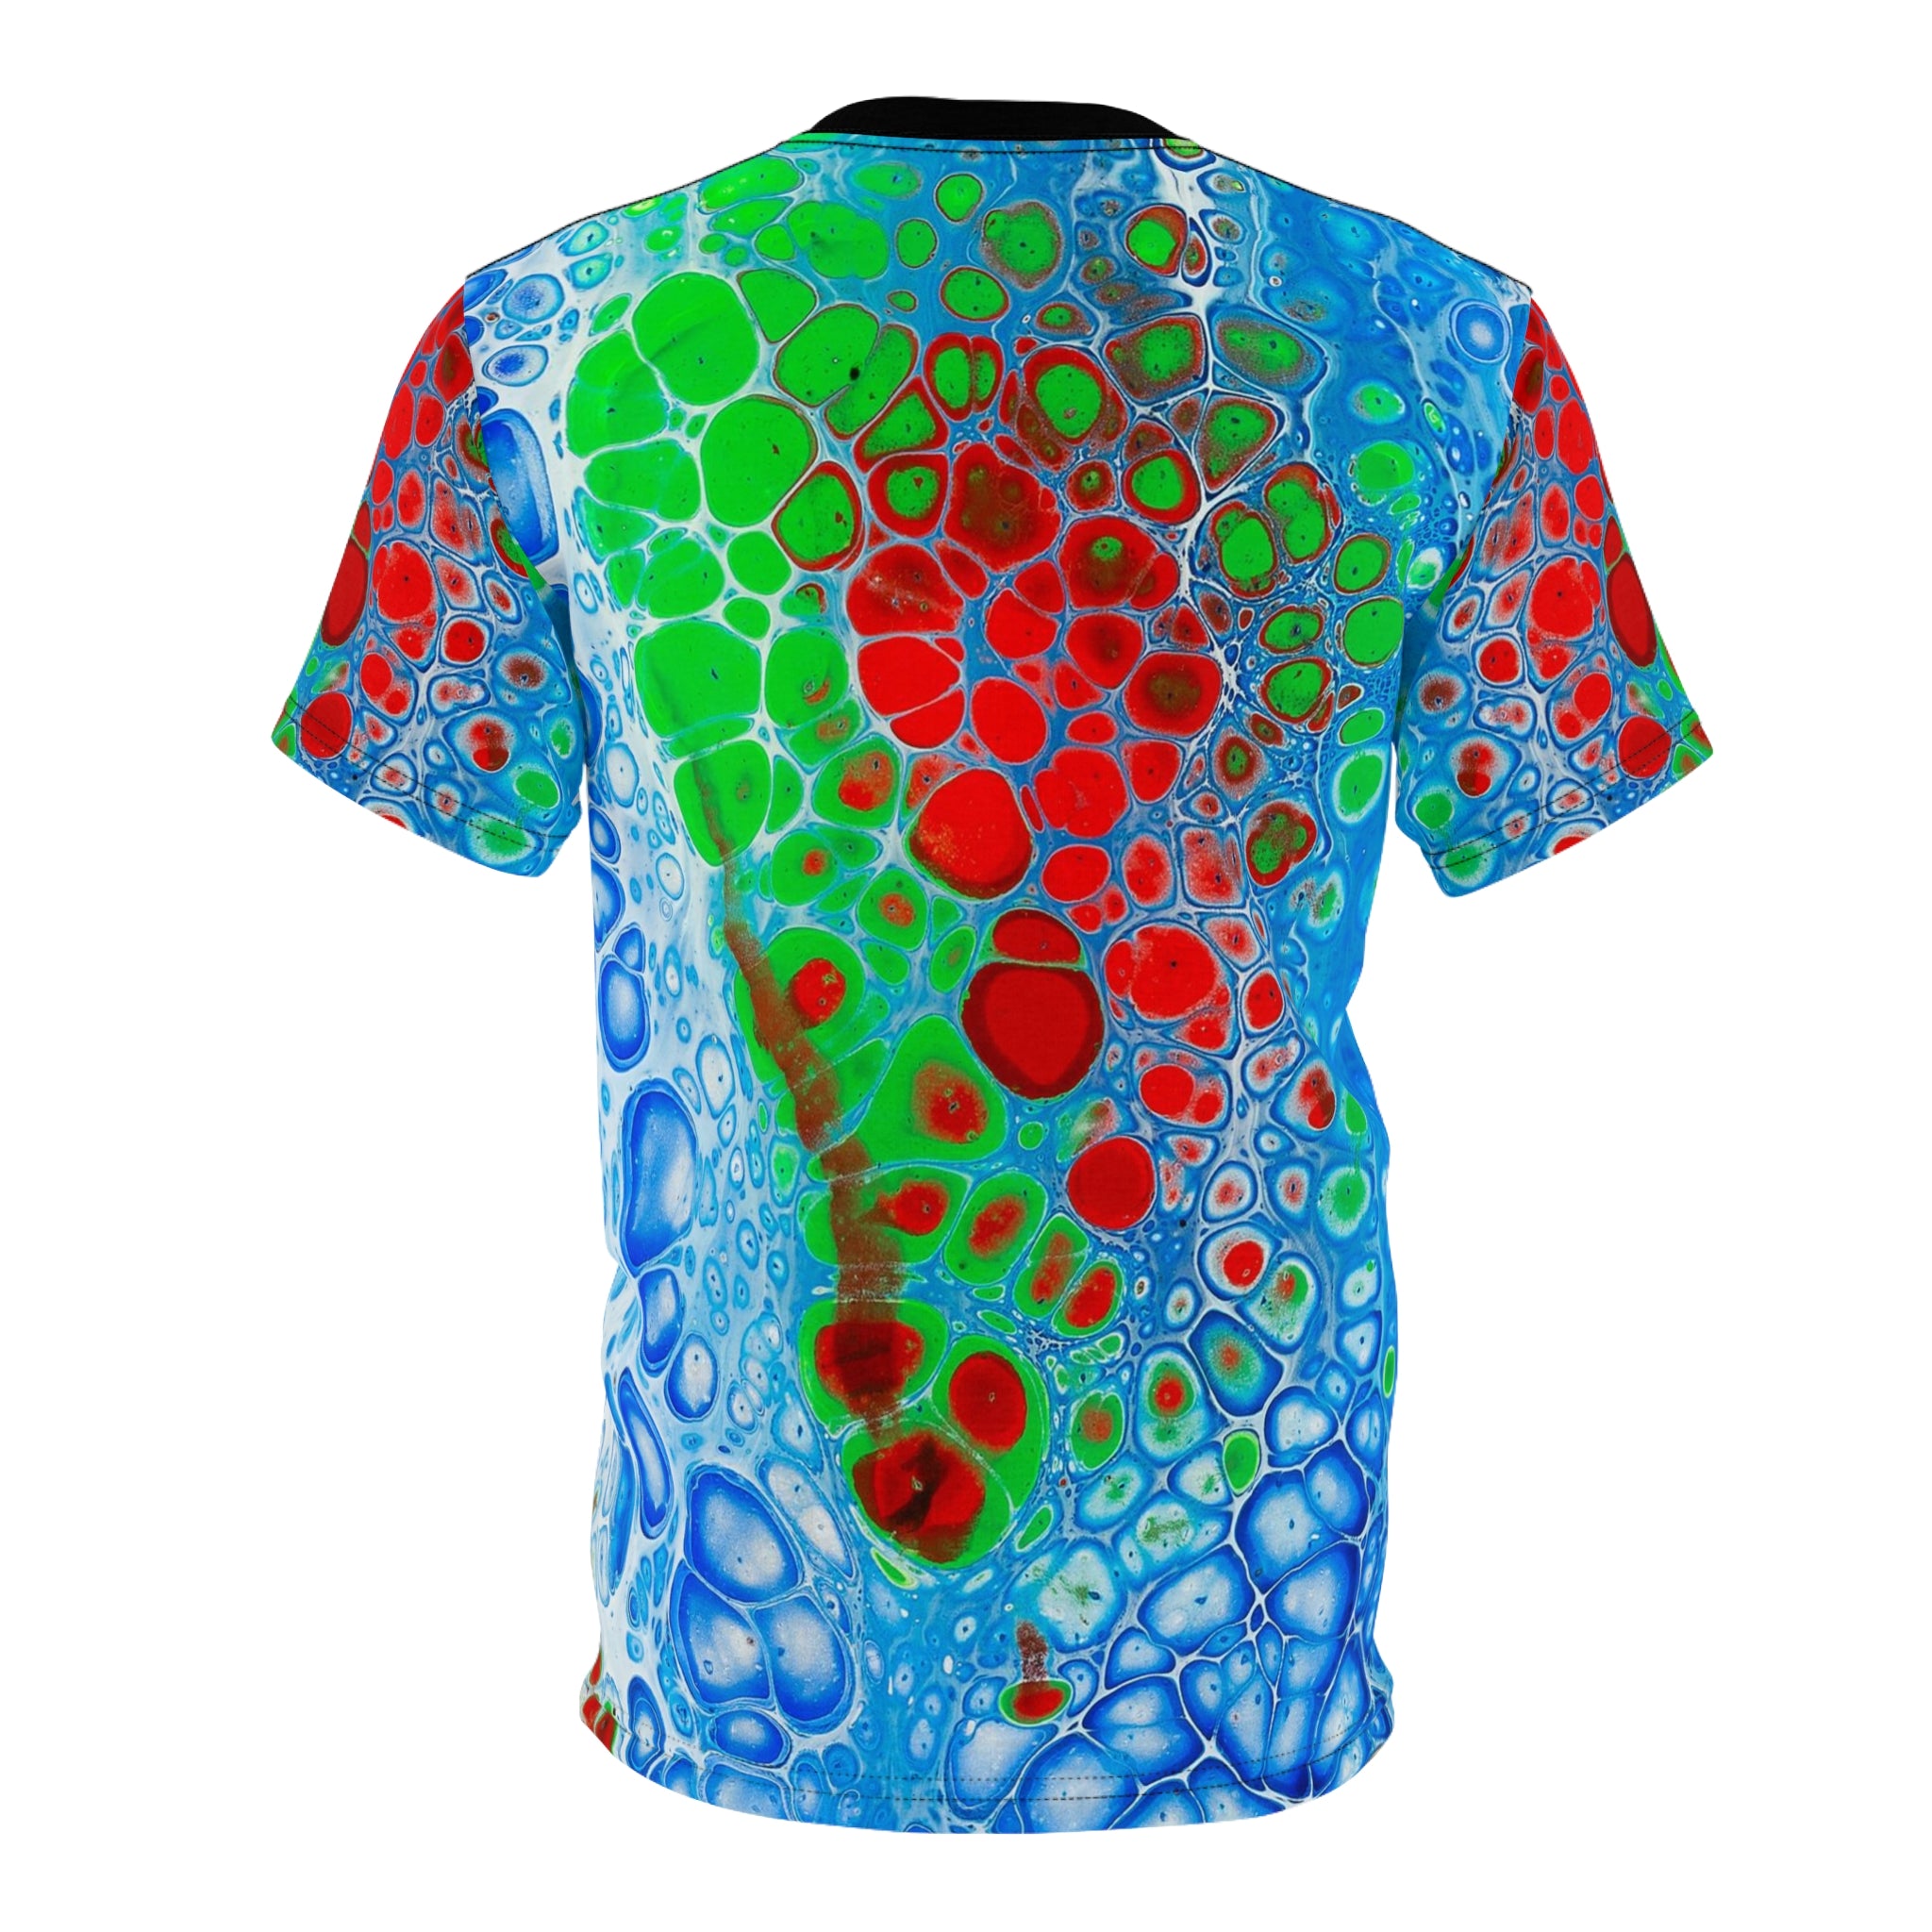 Fluid Bubbles - T Shirt